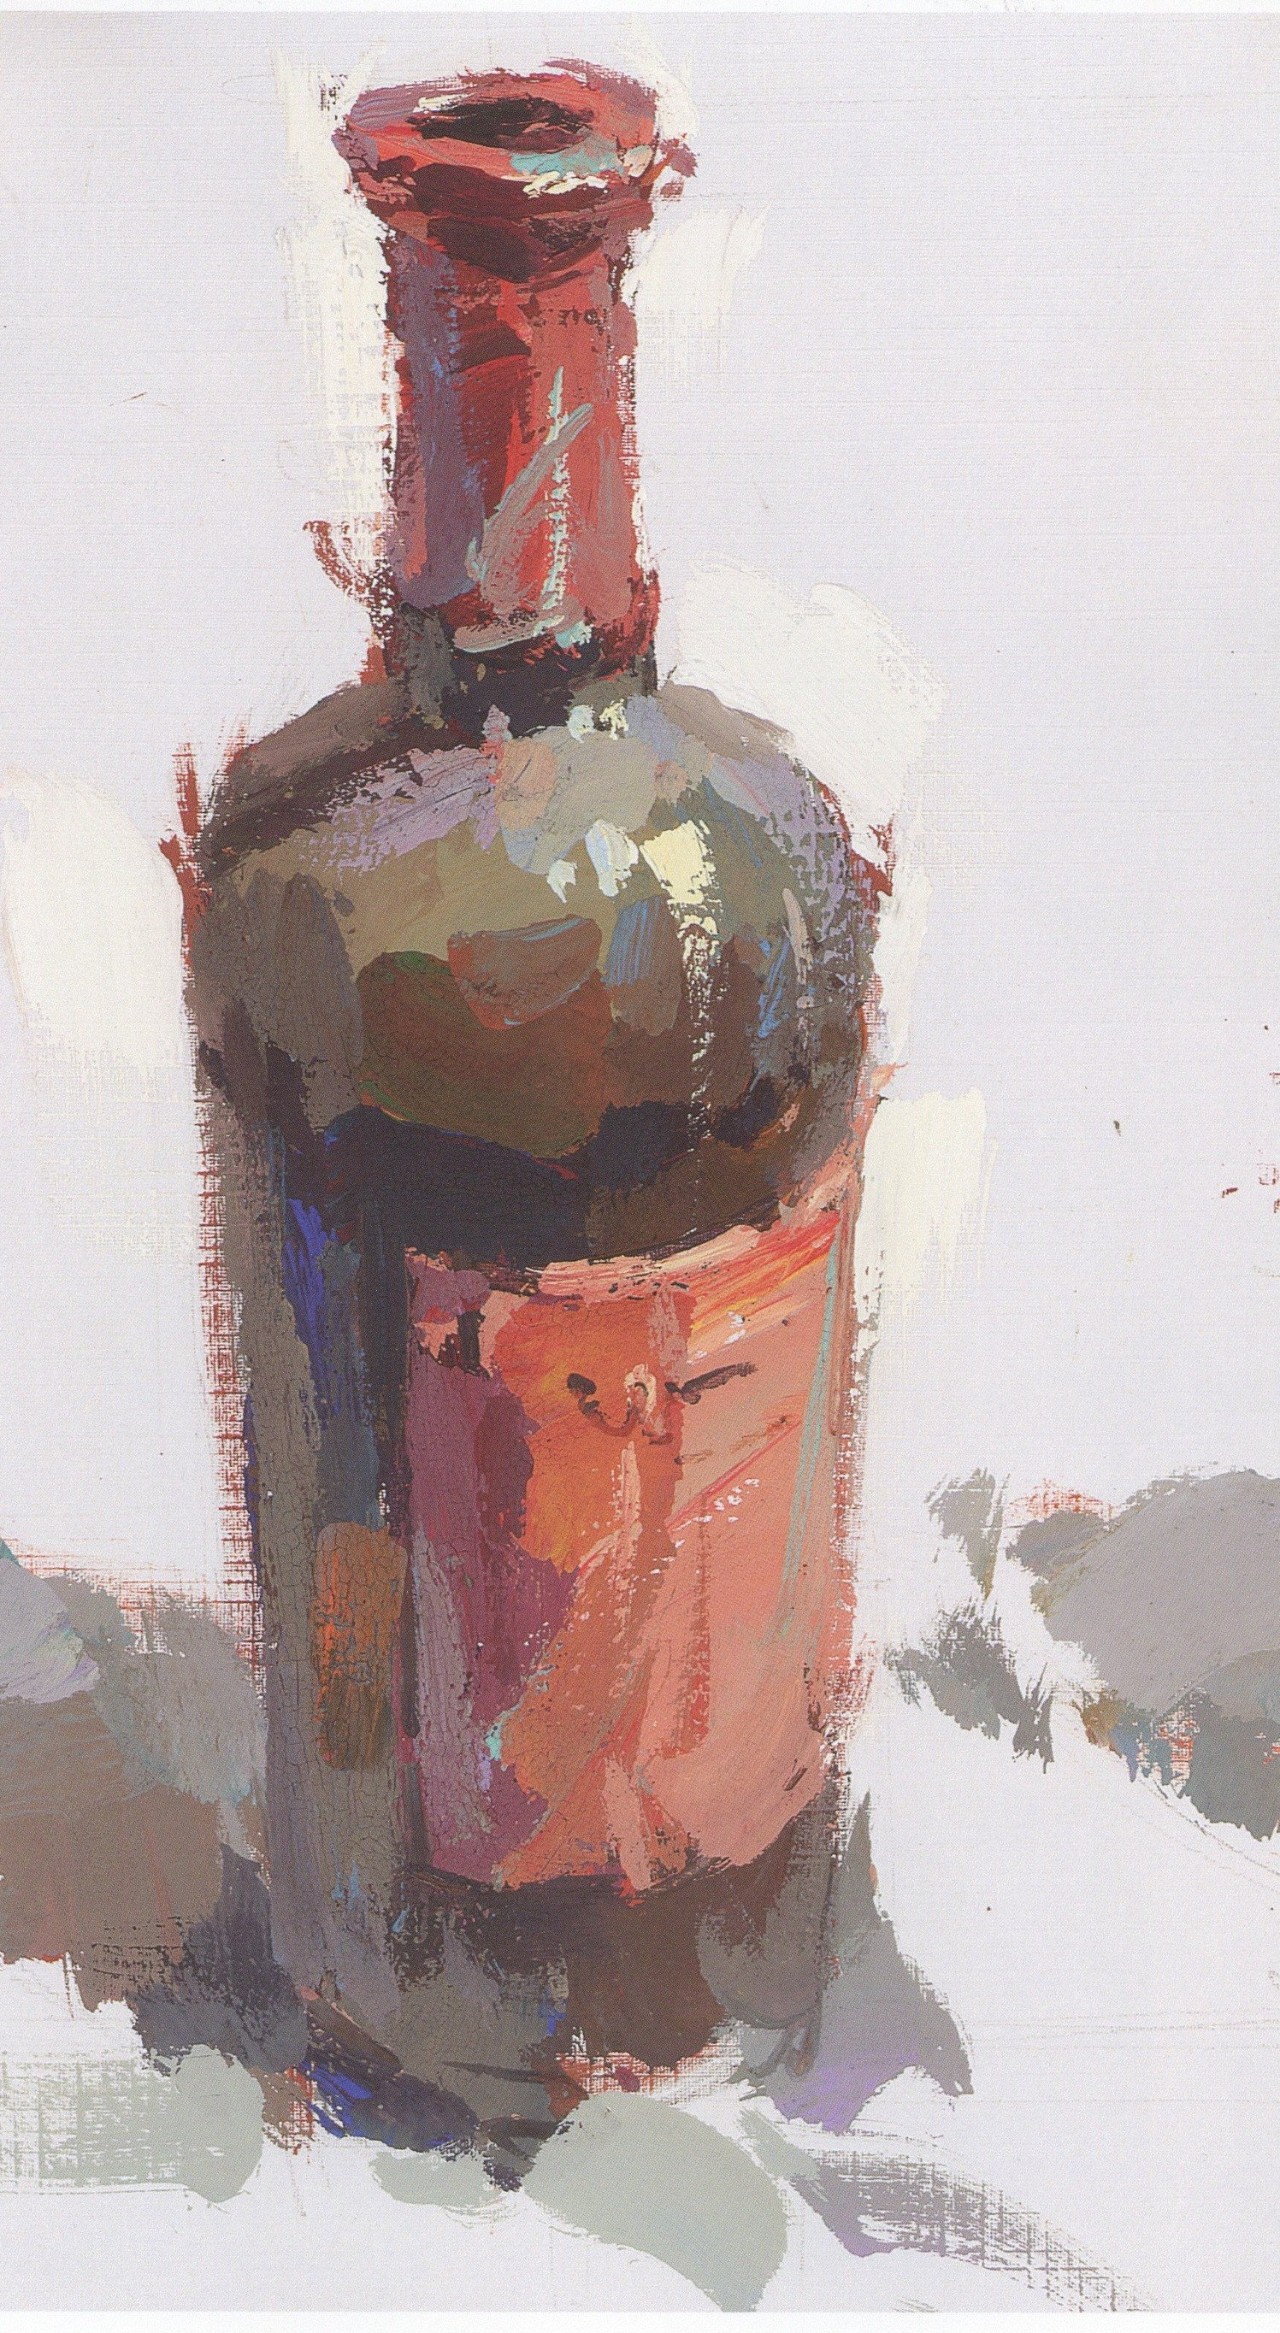 超强干货丨色彩静物基础单体之酒瓶